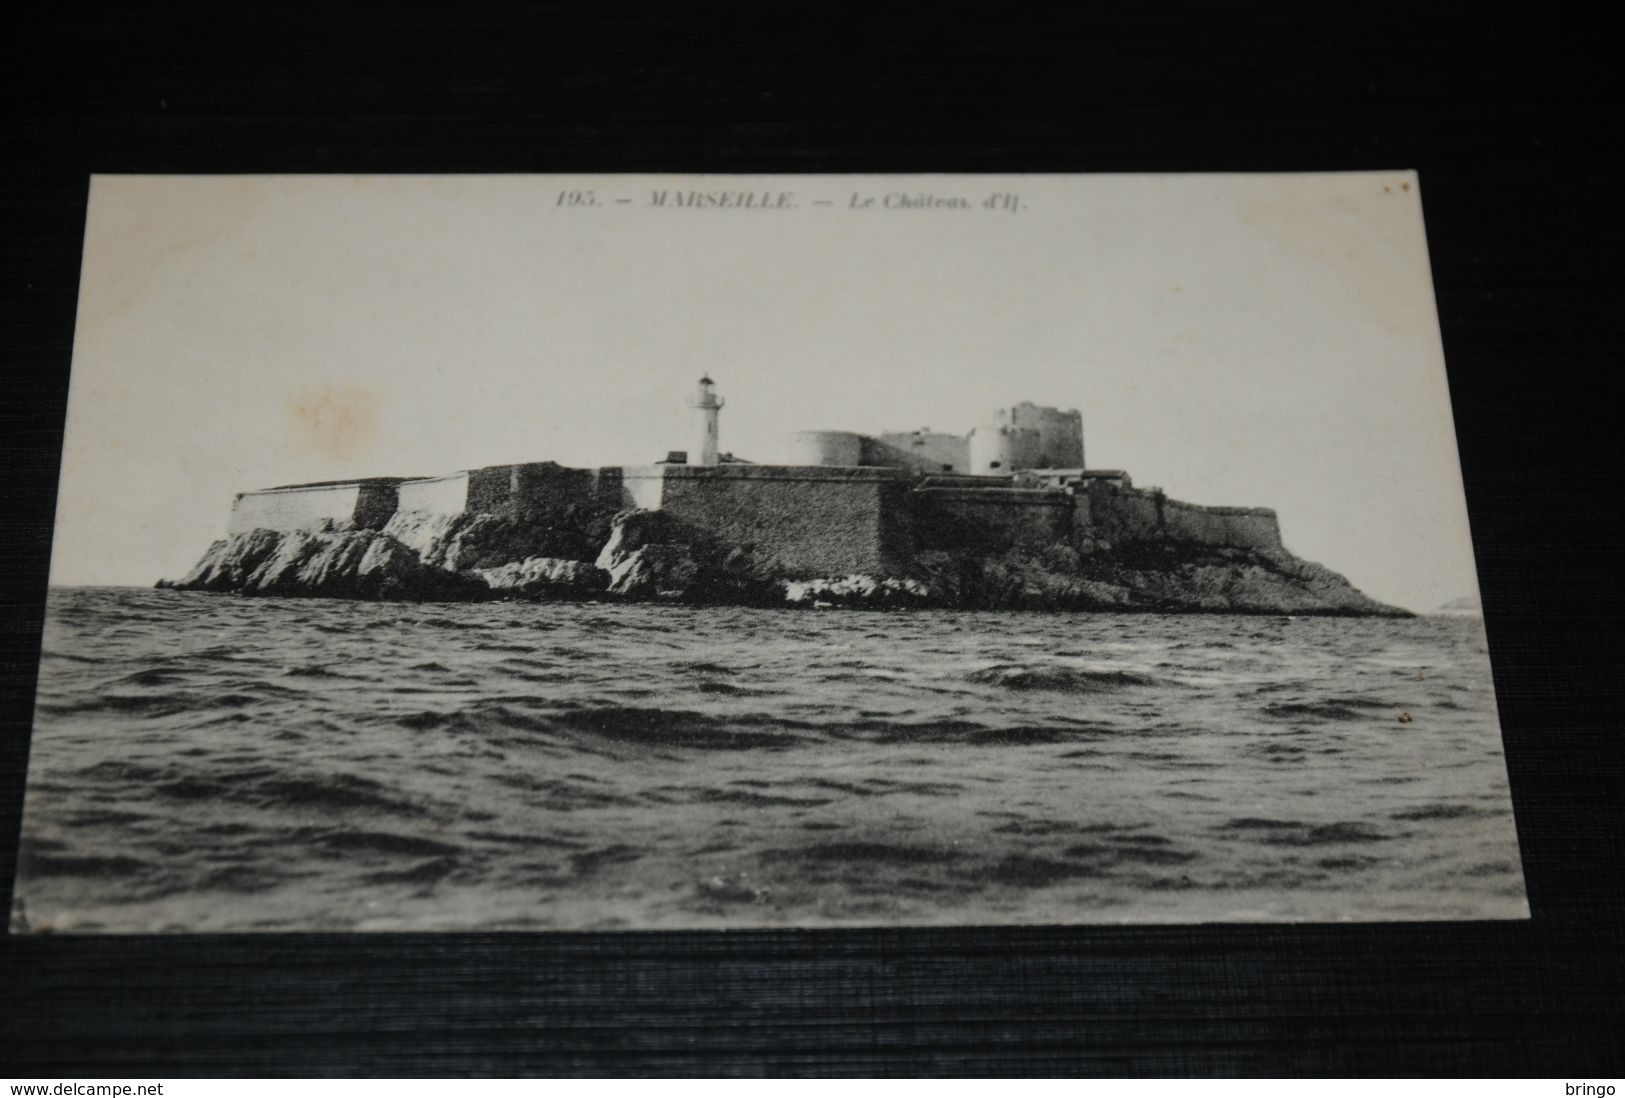 17691-           MARSEILLE, LE CHATEAU D'IL - Château D'If, Frioul, Islands...